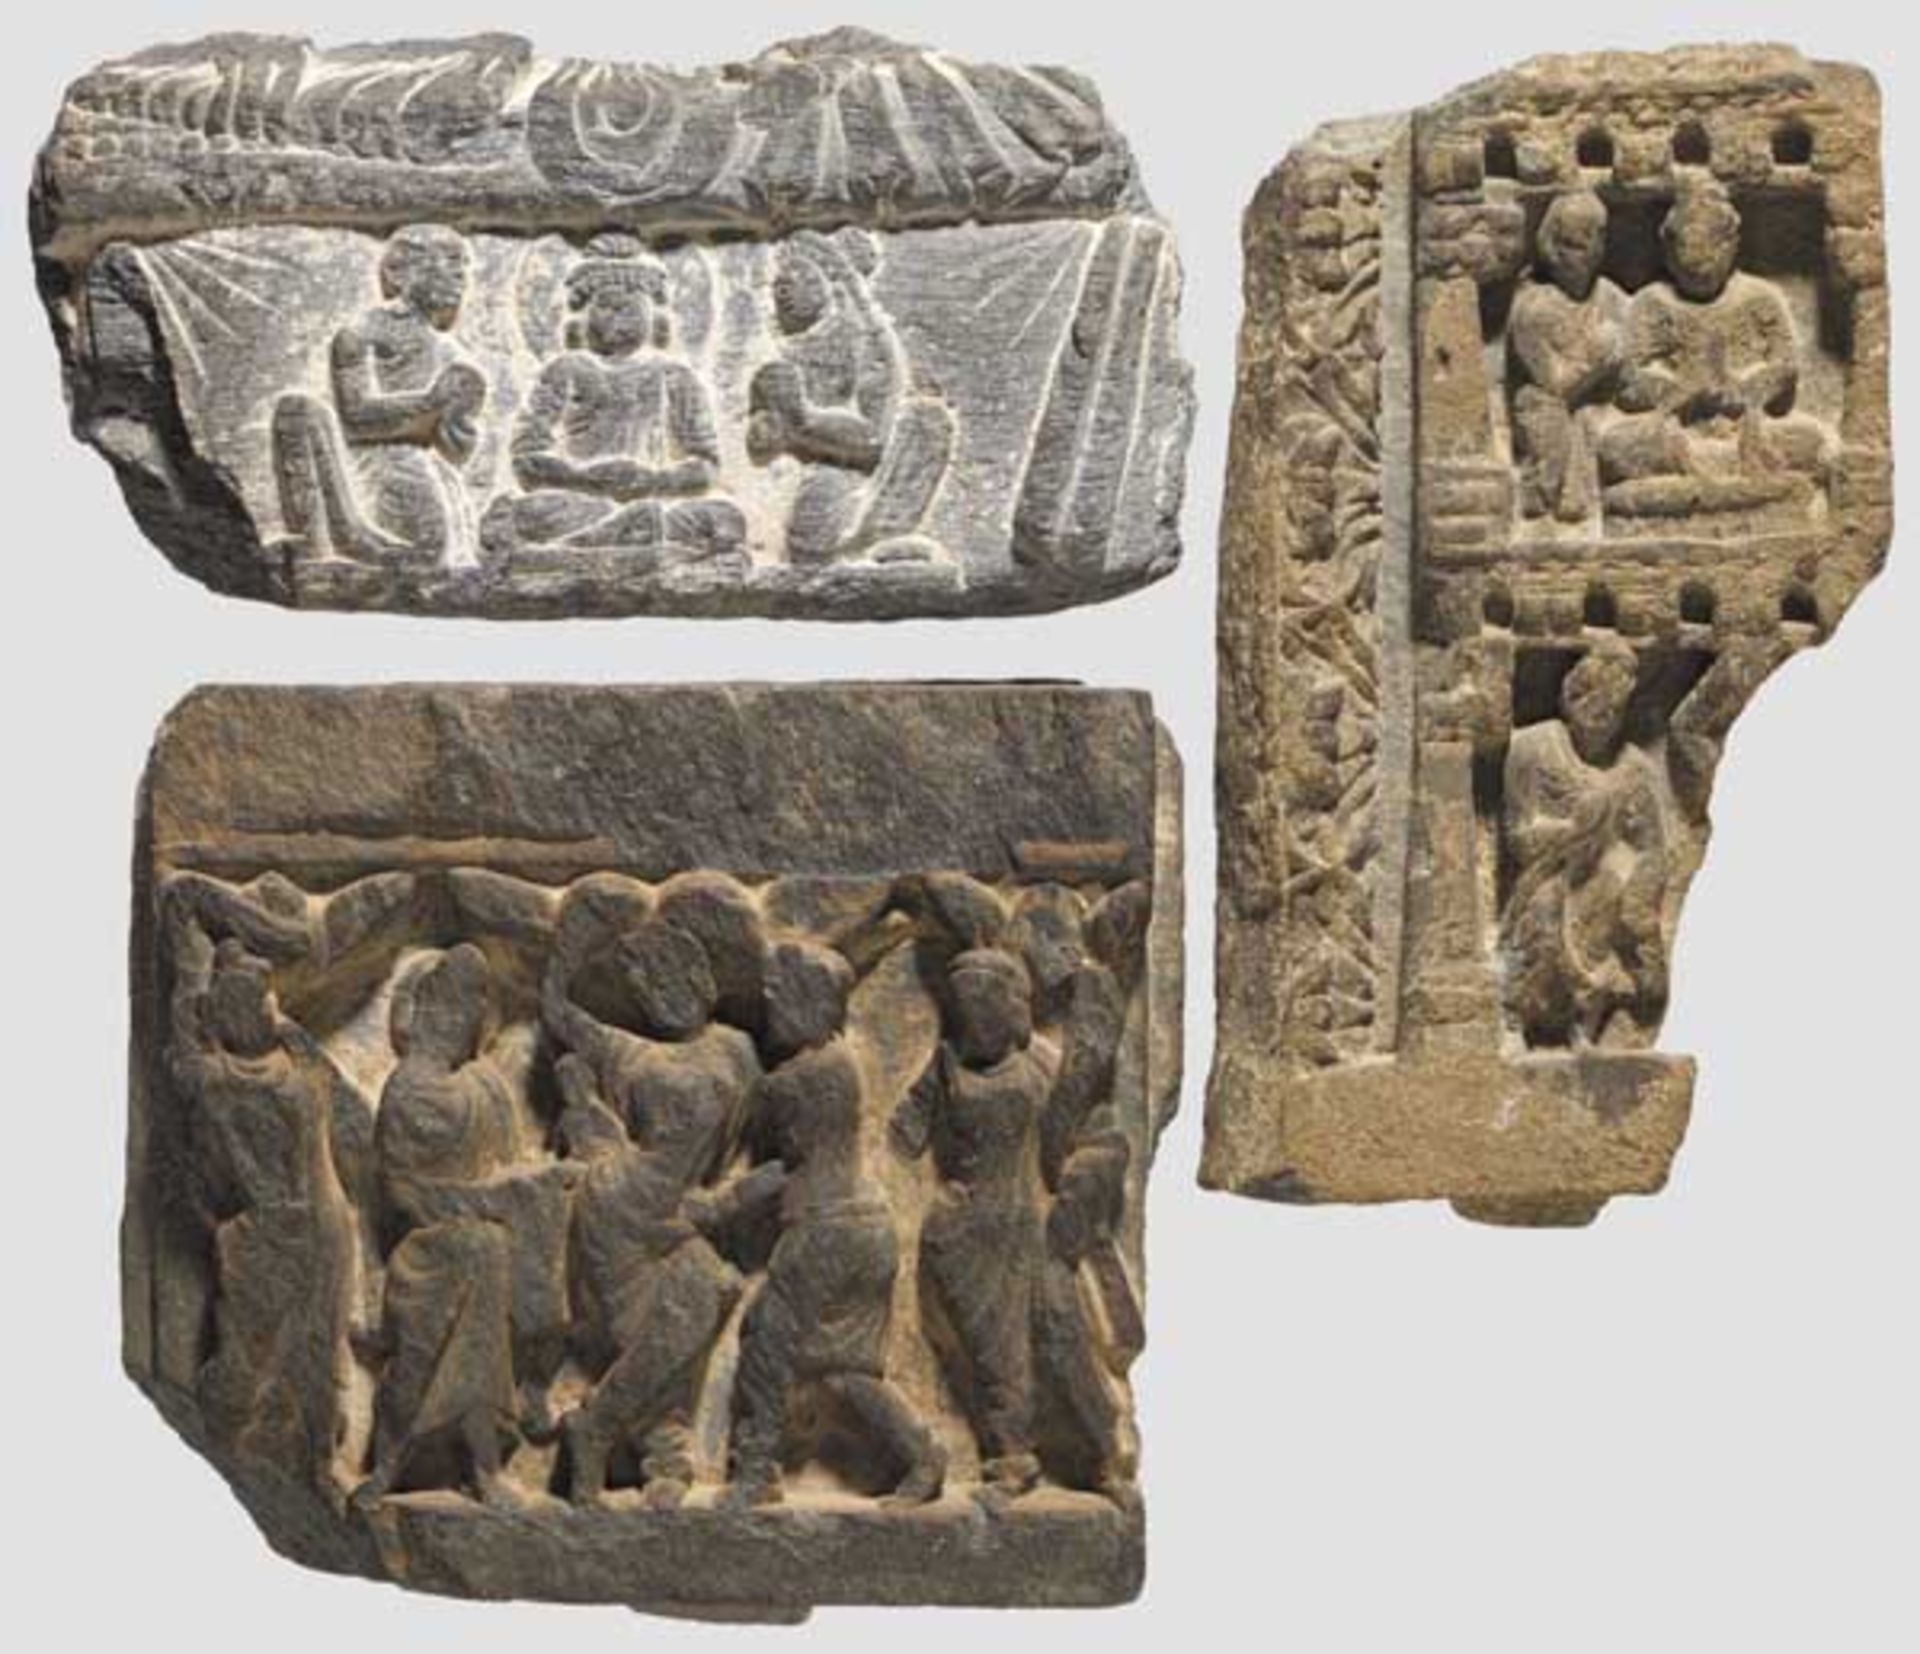 Drei buddhistische Reliefs, nordindischer Raum, 2. - 3. Jhdt. n. Chr.   Frühbuddhistische